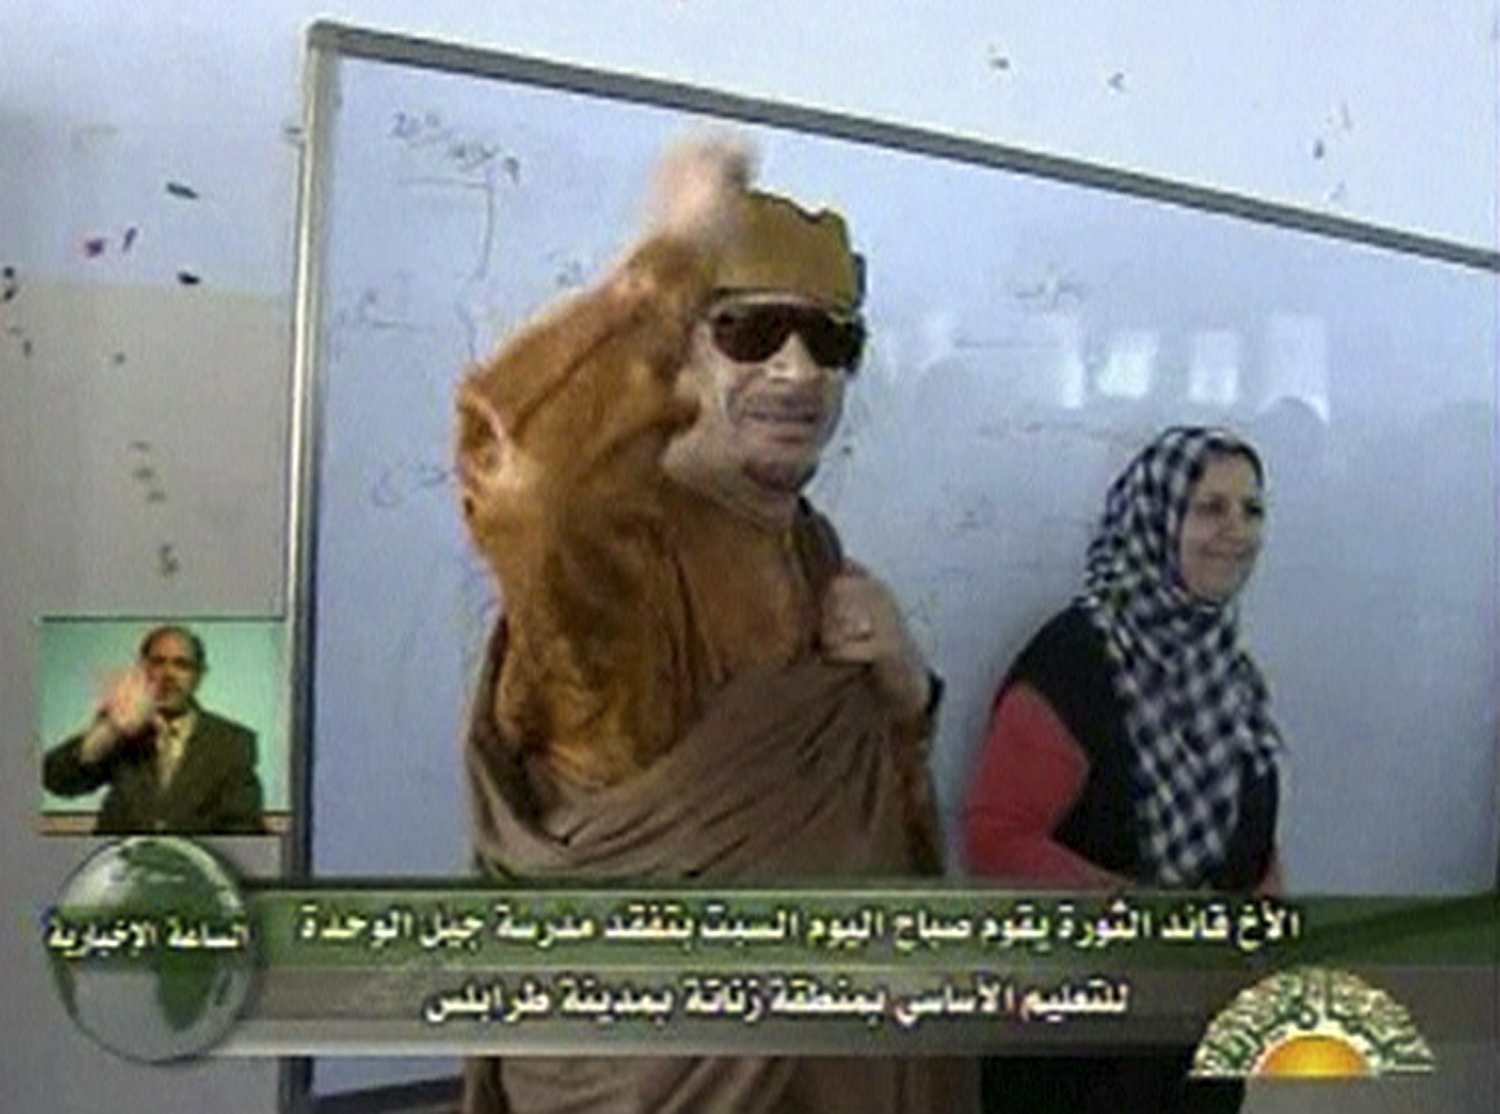 利比亚政府军再遭北约空袭 卡扎菲现身学校号召赶走侵略者